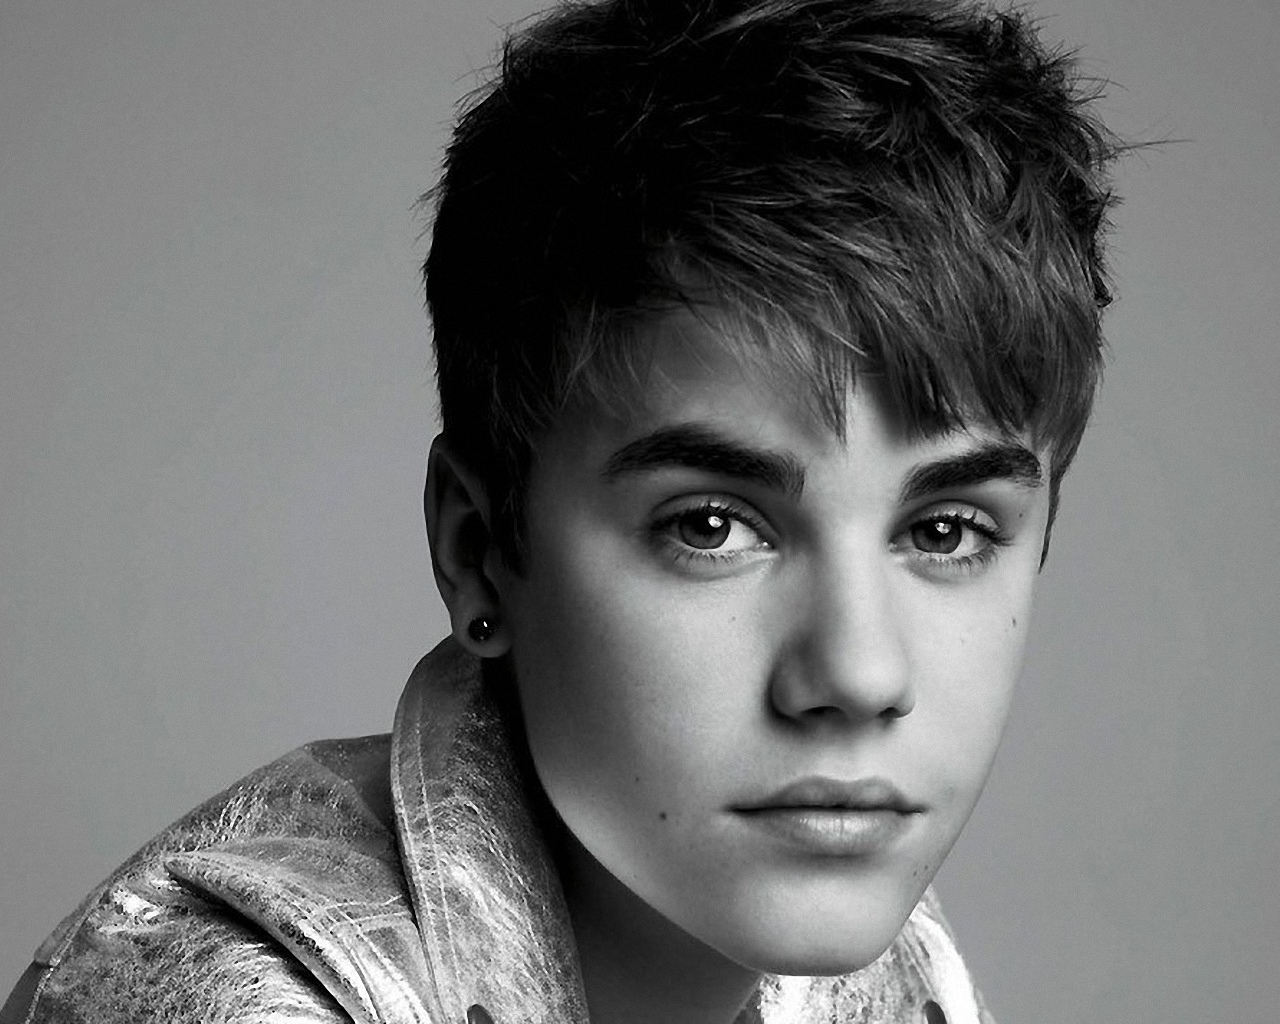 Justin Bieber 2012 wallpapers Justin Bieber 2012 stock photos